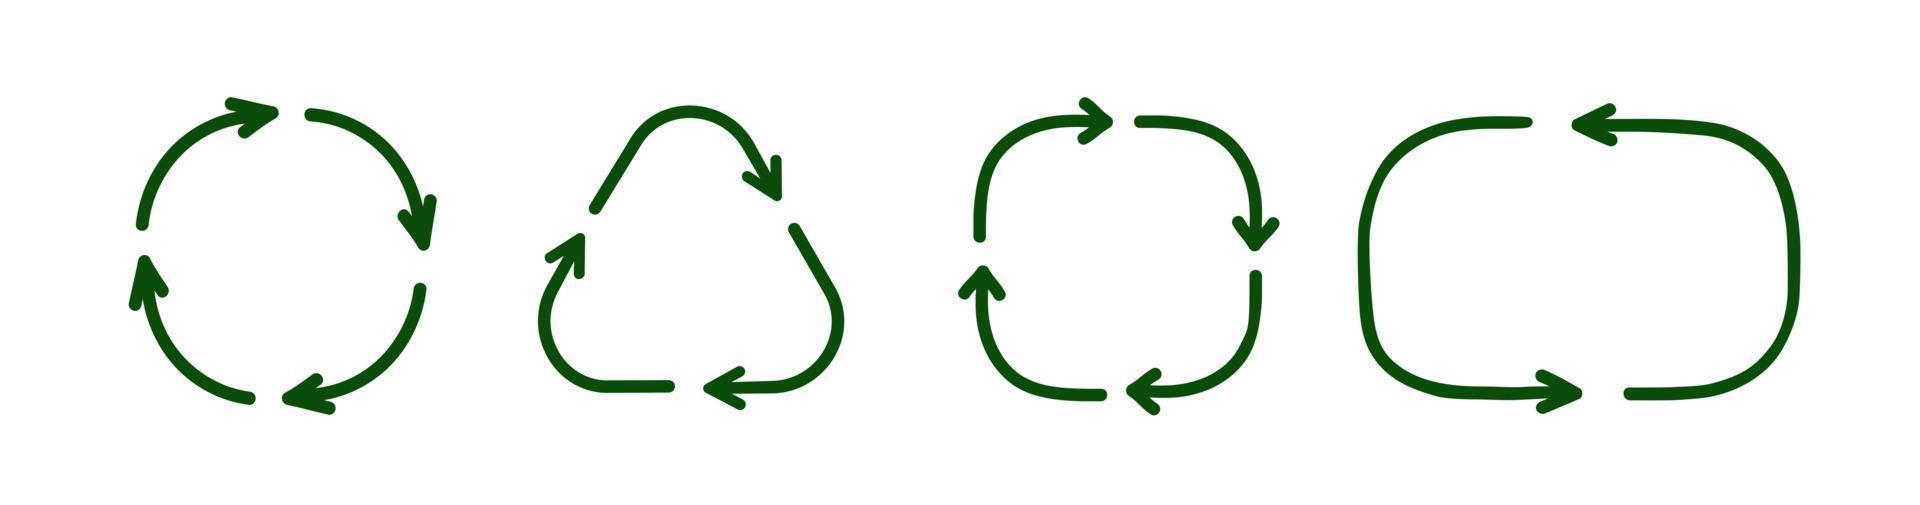 conjunto de símbolos de reciclaje vectorial estilo de dibujo a mano vector